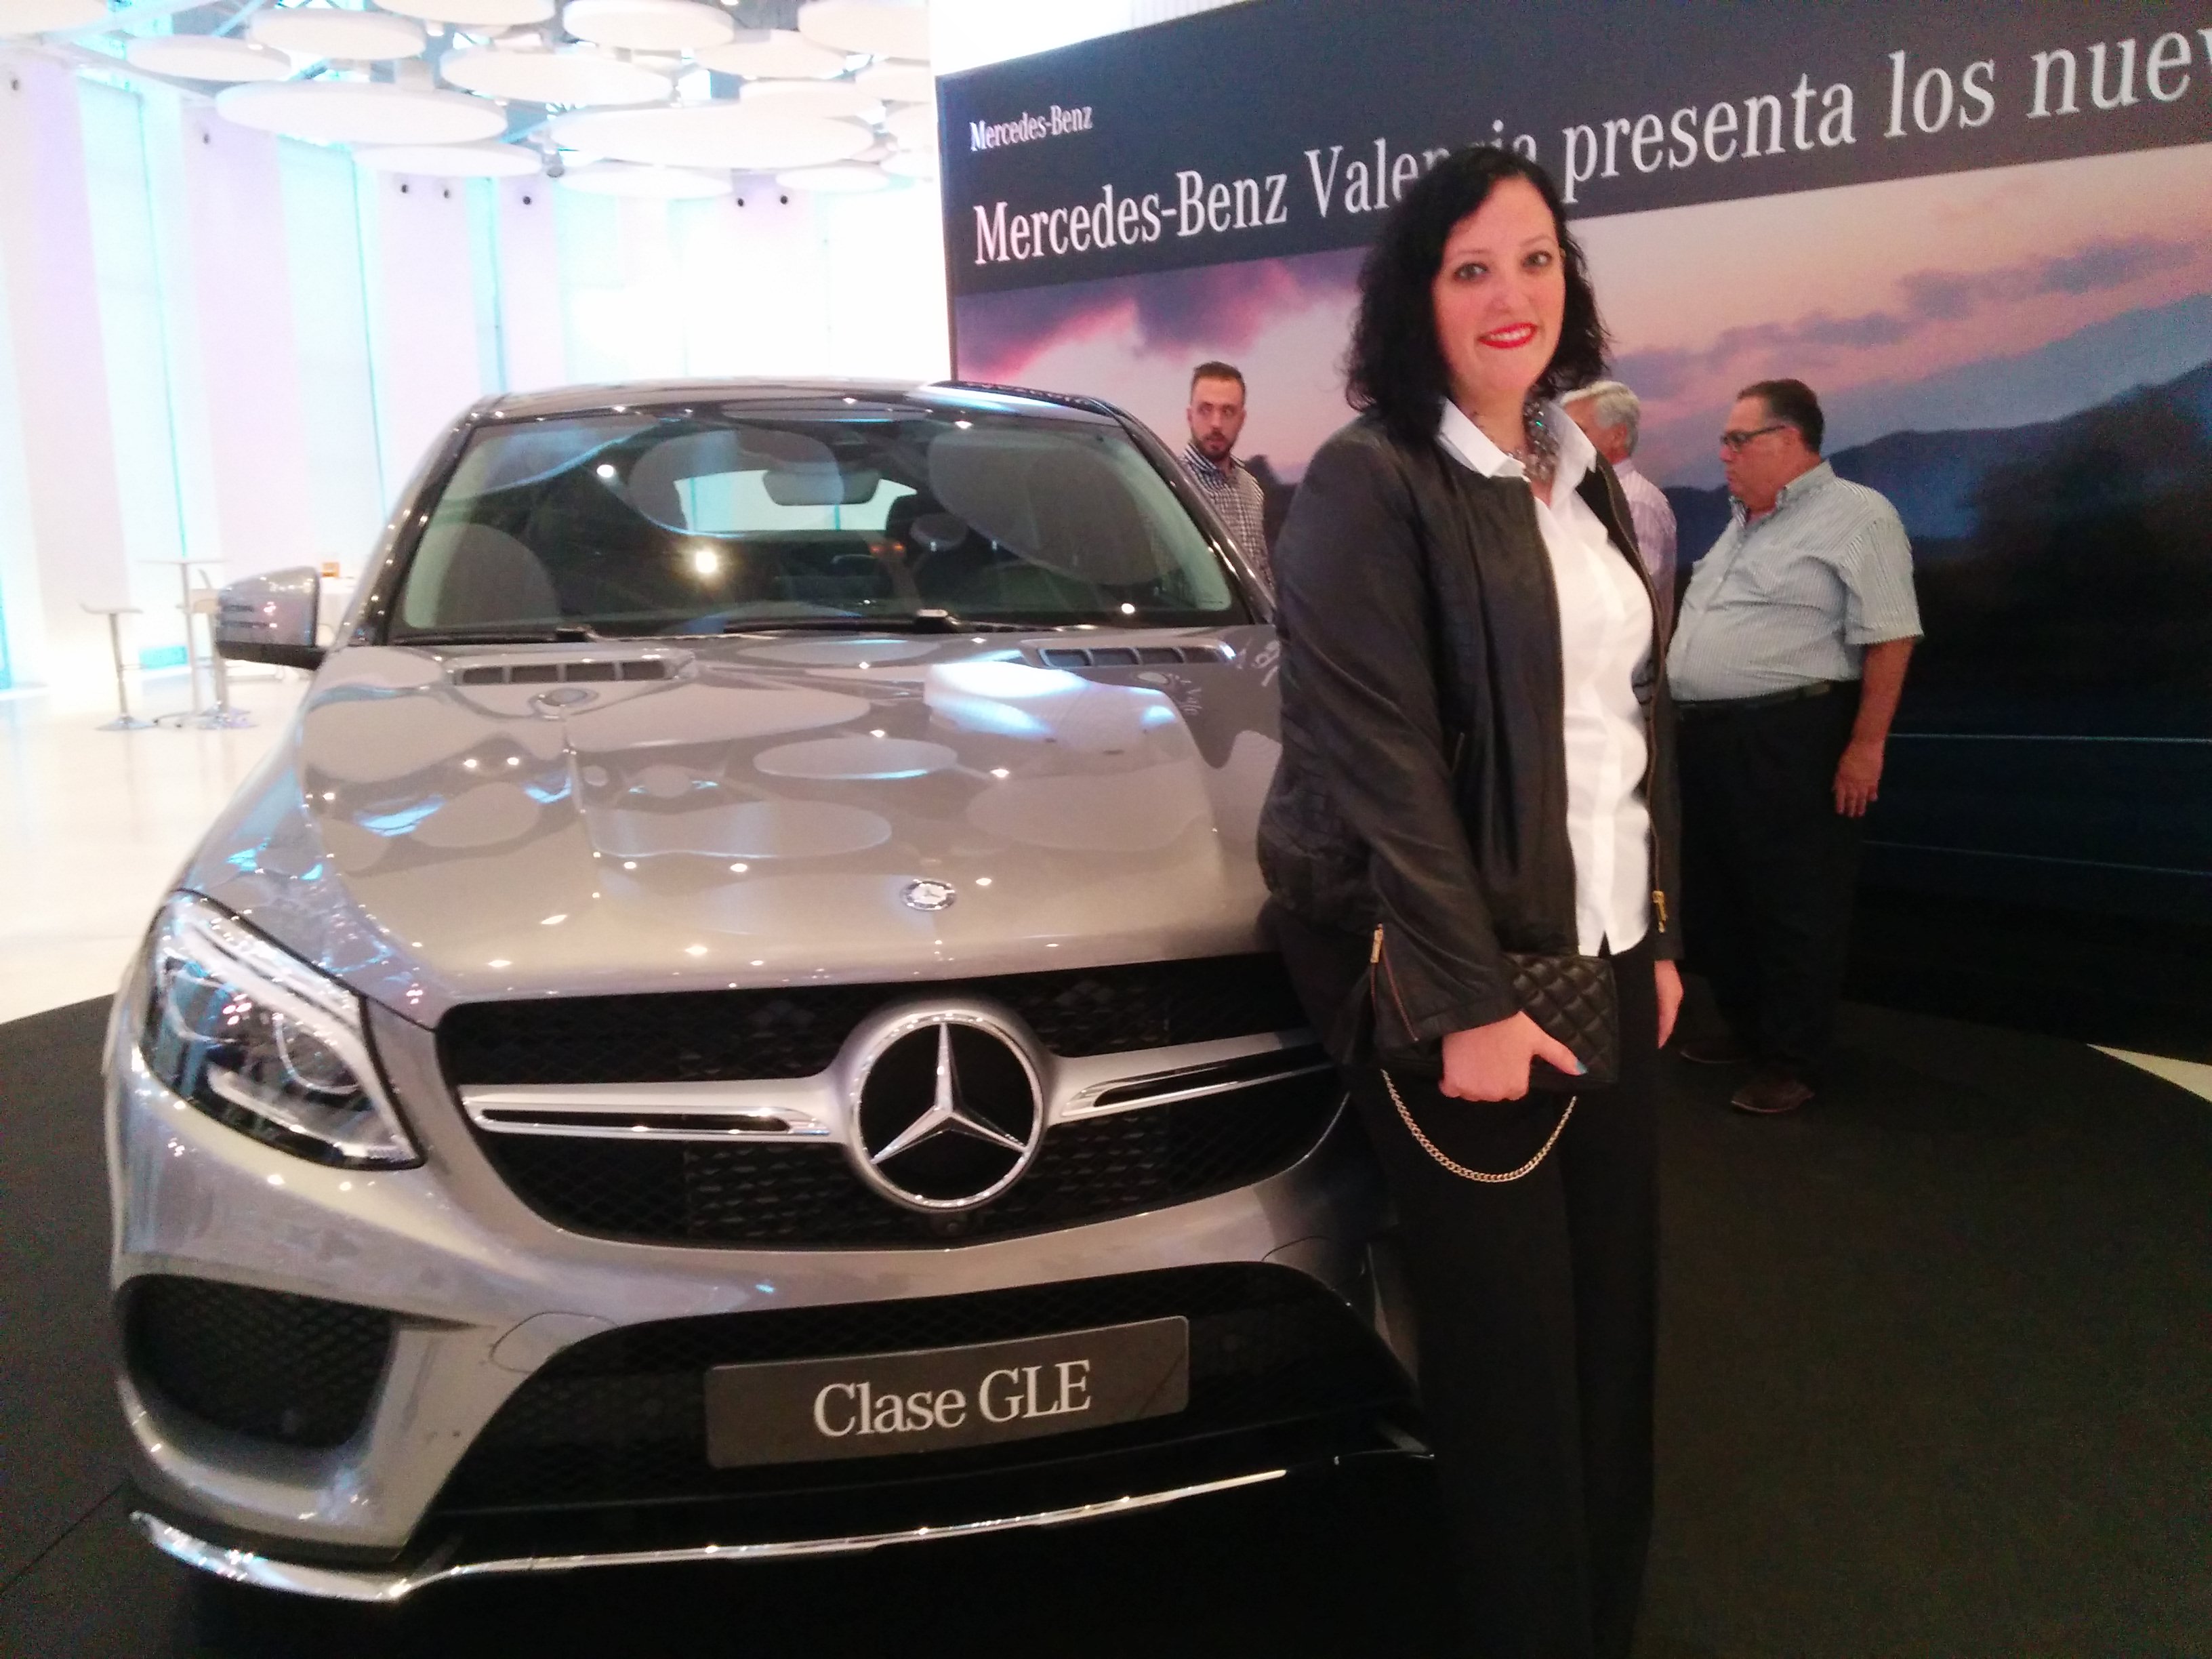 Presentación de GLE y GLC Mercedes Benz Valencia